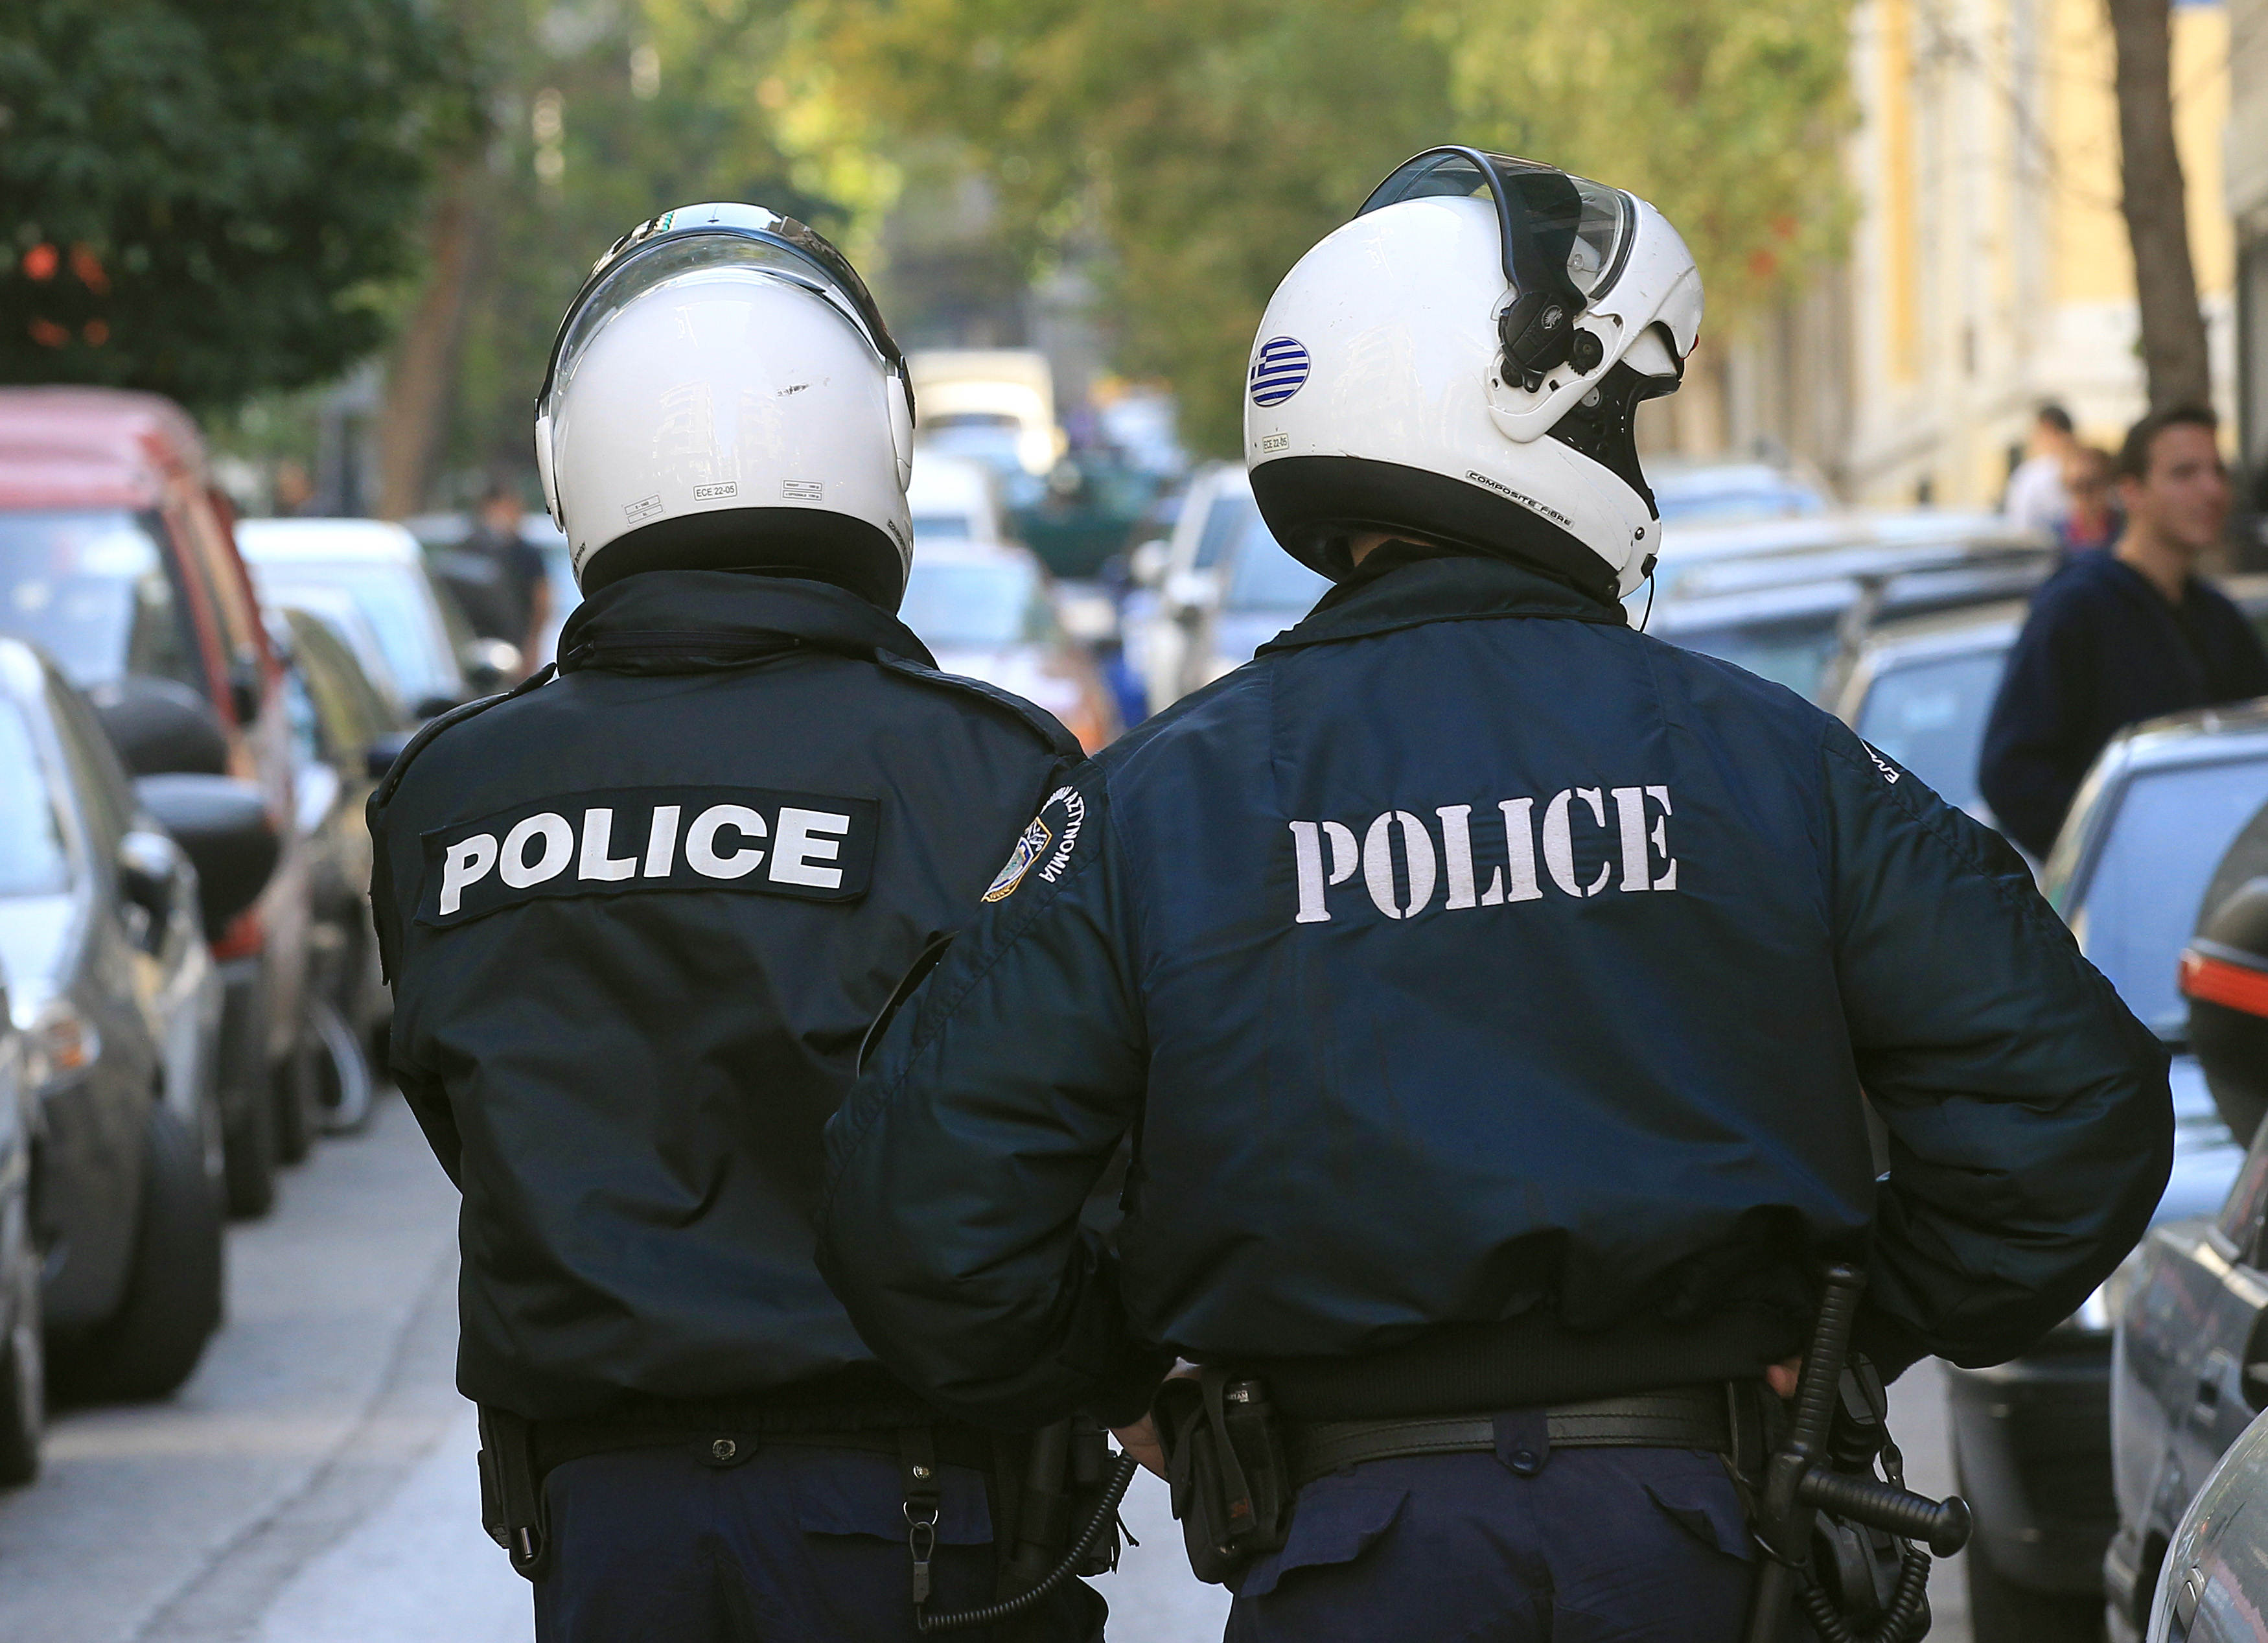 Σύγχρονος εξοπλισμός σε αστυνομικούς τουριστικών περιοχών της Κρήτης